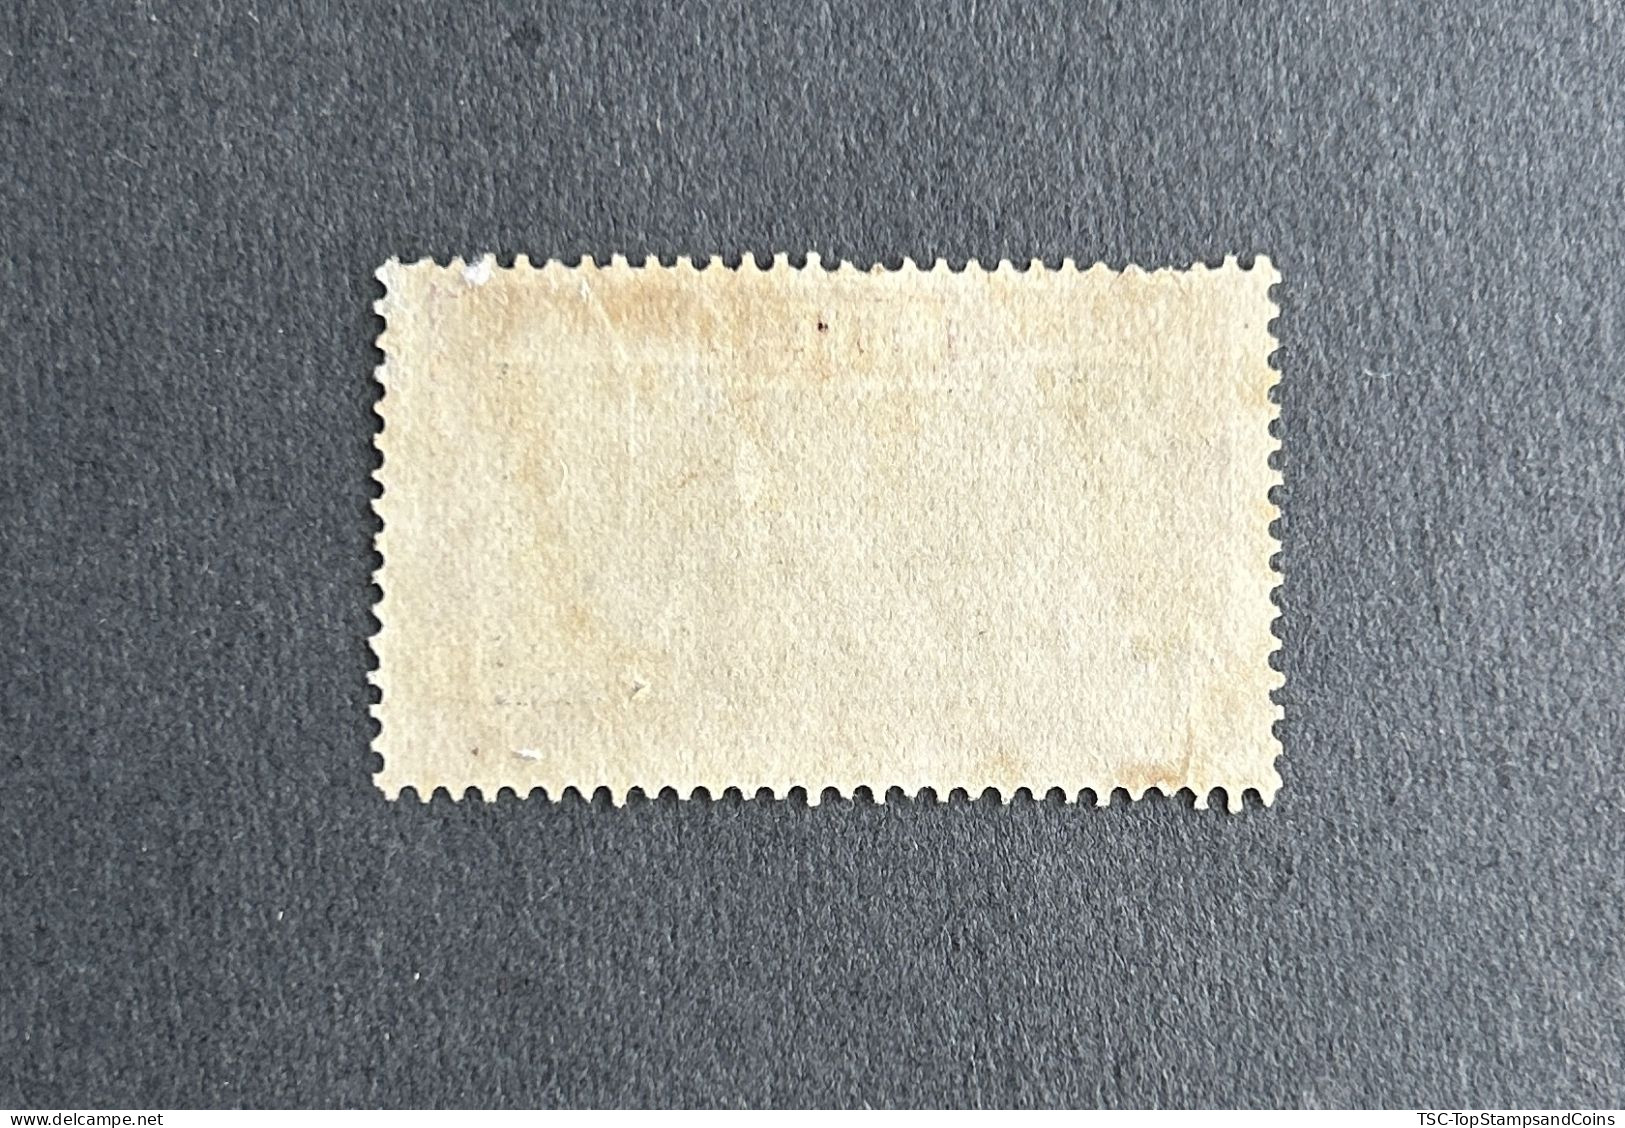 FRTG0141U2 - Agriculture - Oil Palm Plantation - 1 F Used Stamp - French Togo - 1924 - Gebruikt